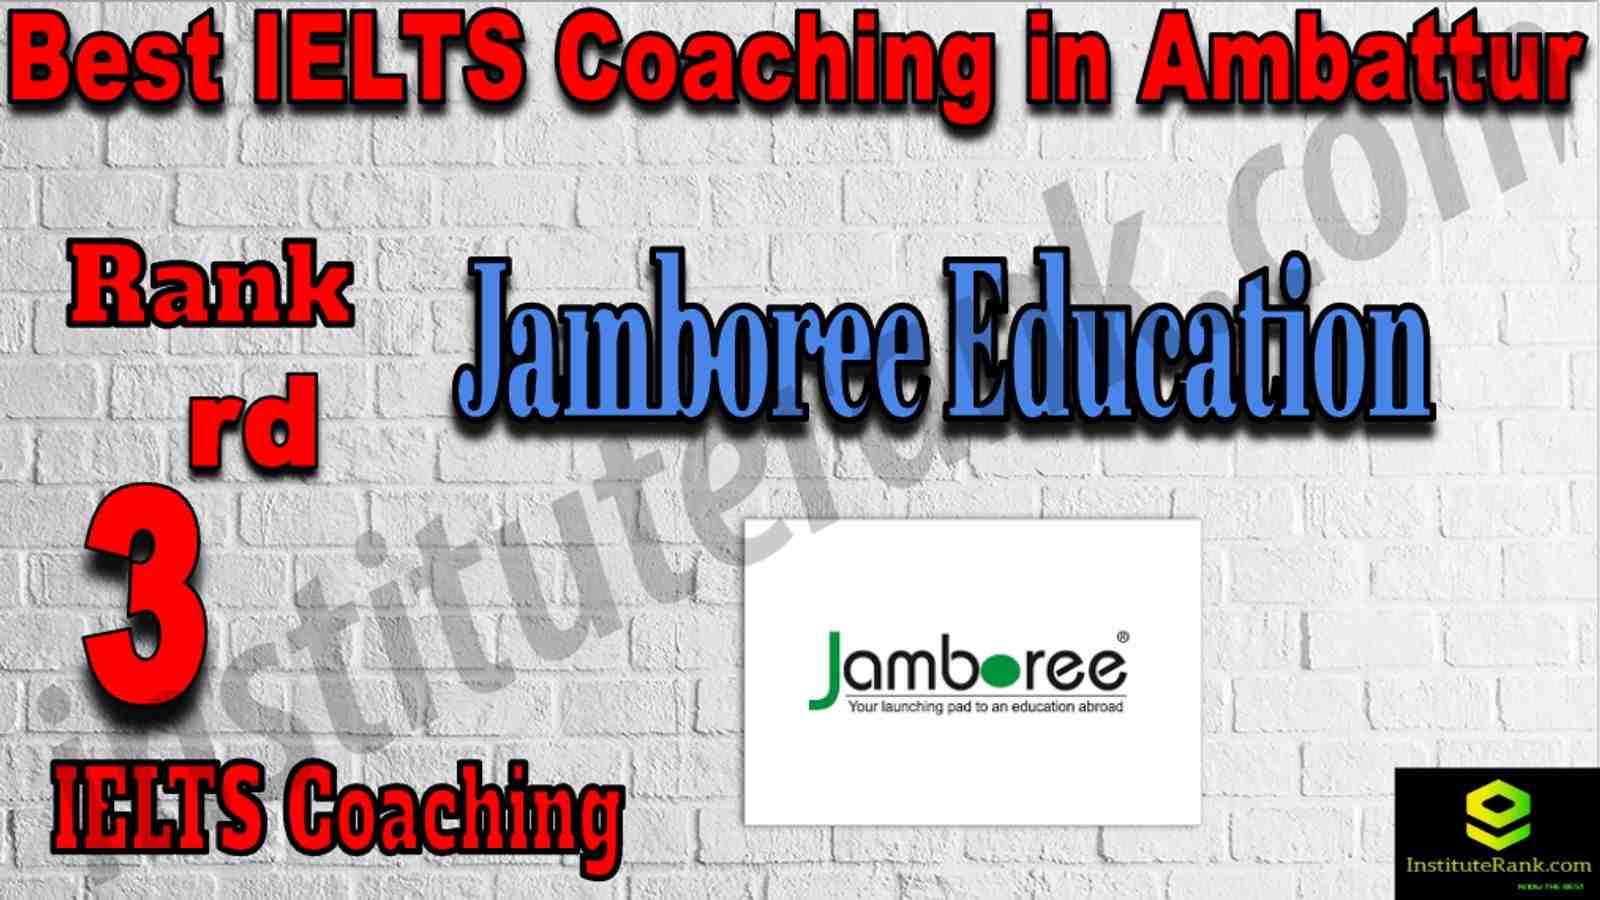 3rd Best IELTS Coaching in Ambattur